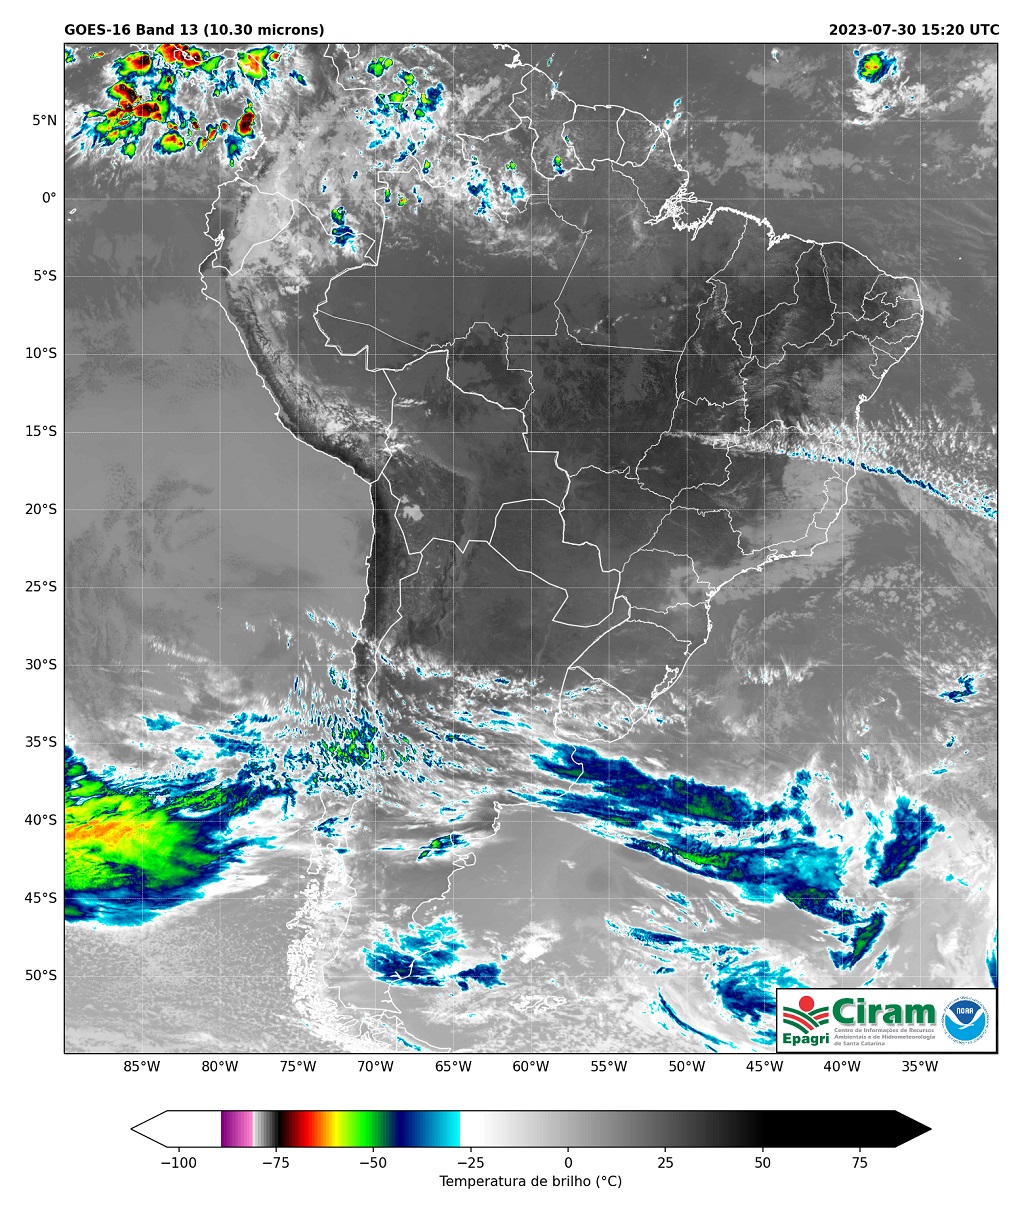 Descrição da Imagem de Satélite, 30/07/2023 às 10h50min

As imagens de satélite mostram nuvens (em tons de azul e verde) na Argentina, ao sul do Uruguai, associadas a corrente de jato (ventos fortes em altitude) e deslocamento de uma frente fria.